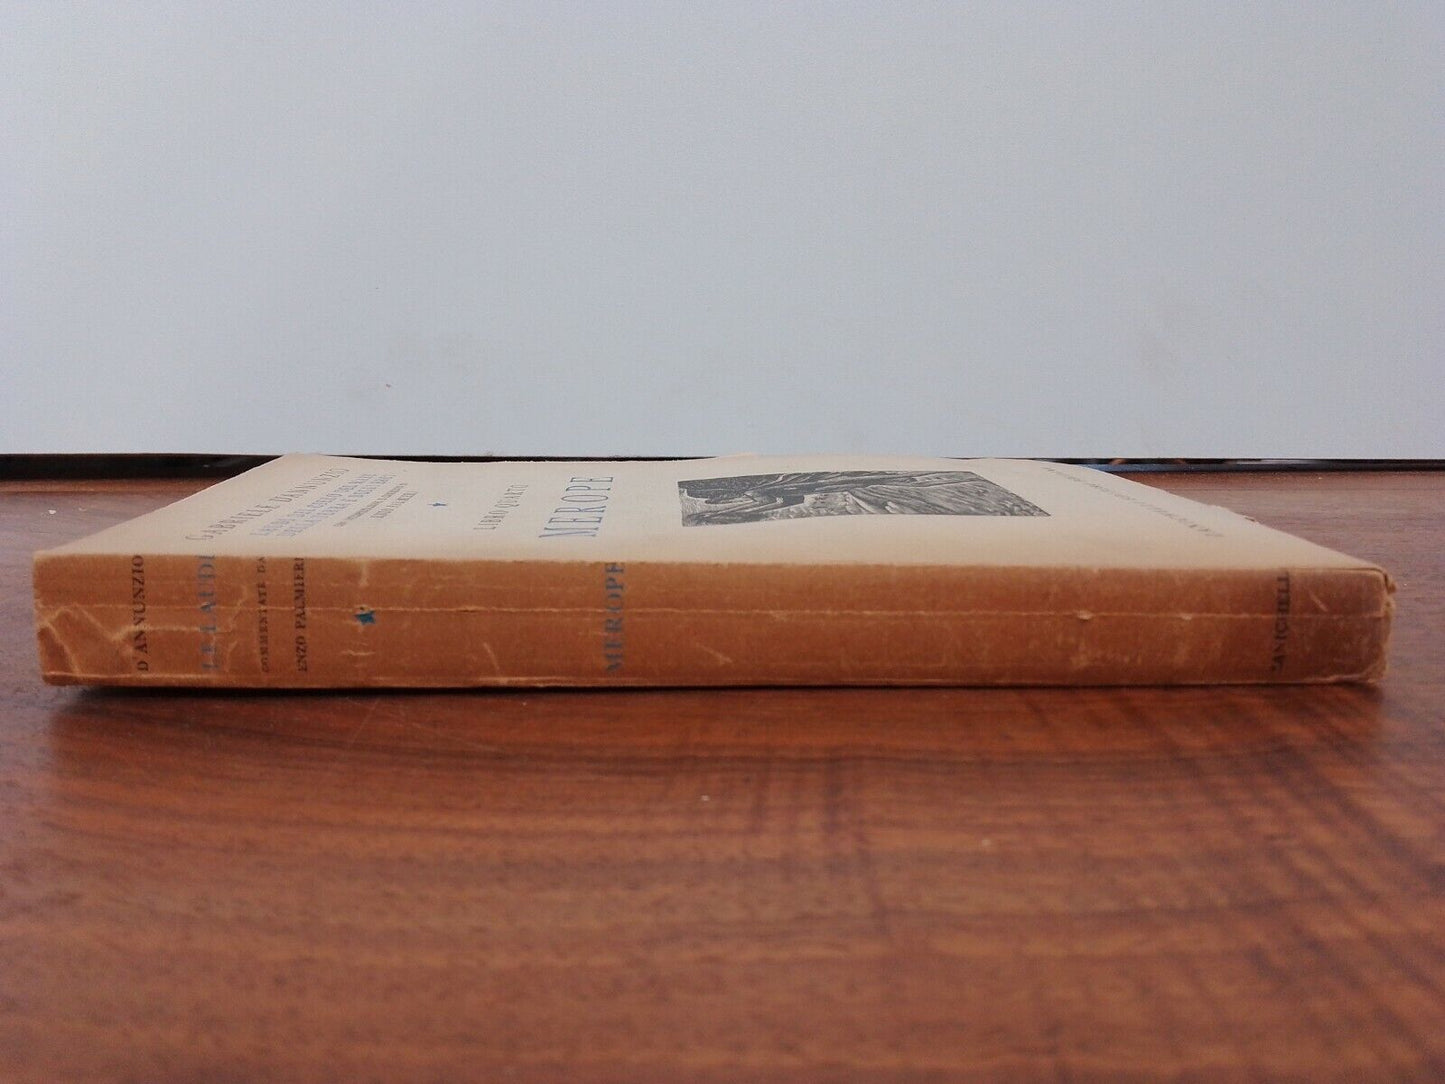 MEROPE, libro quarto, G.D'Annunzio, ZANICHELLI, 1945